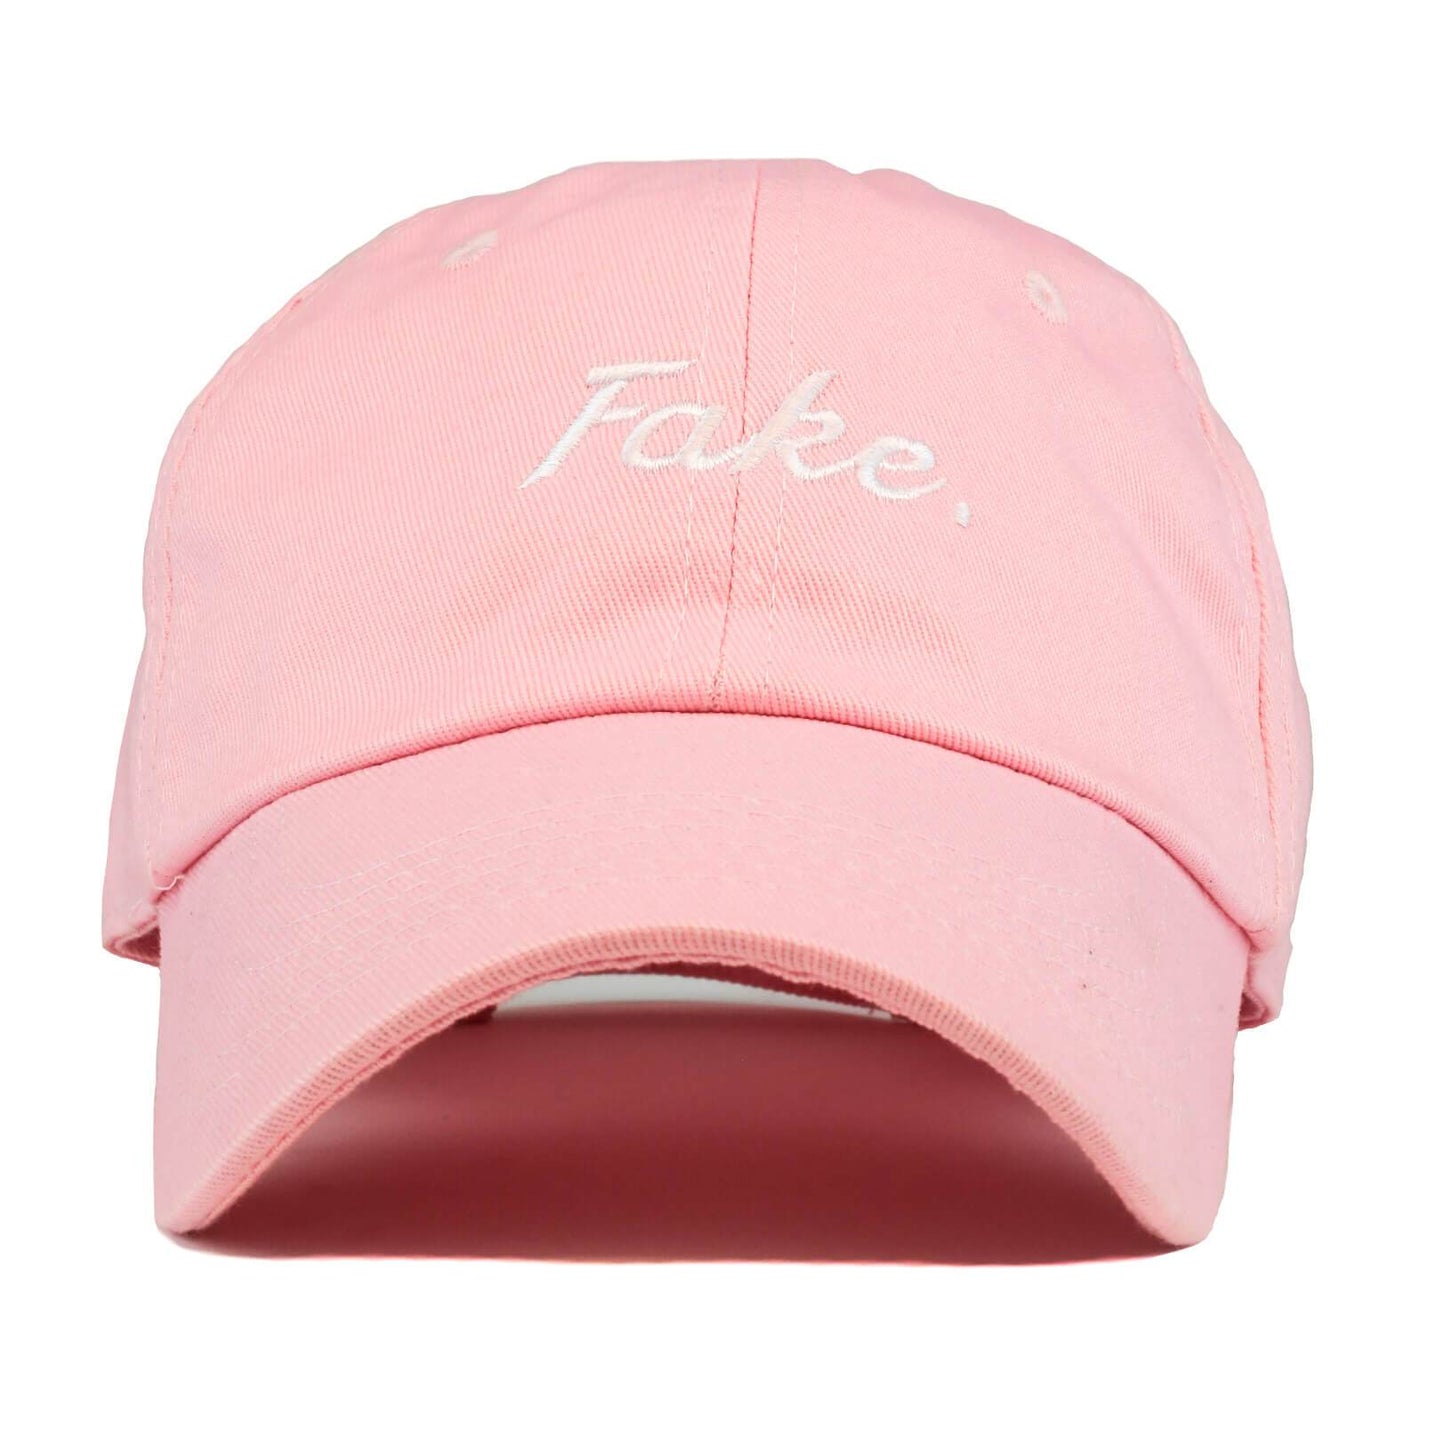 Pink "Fake" Cap